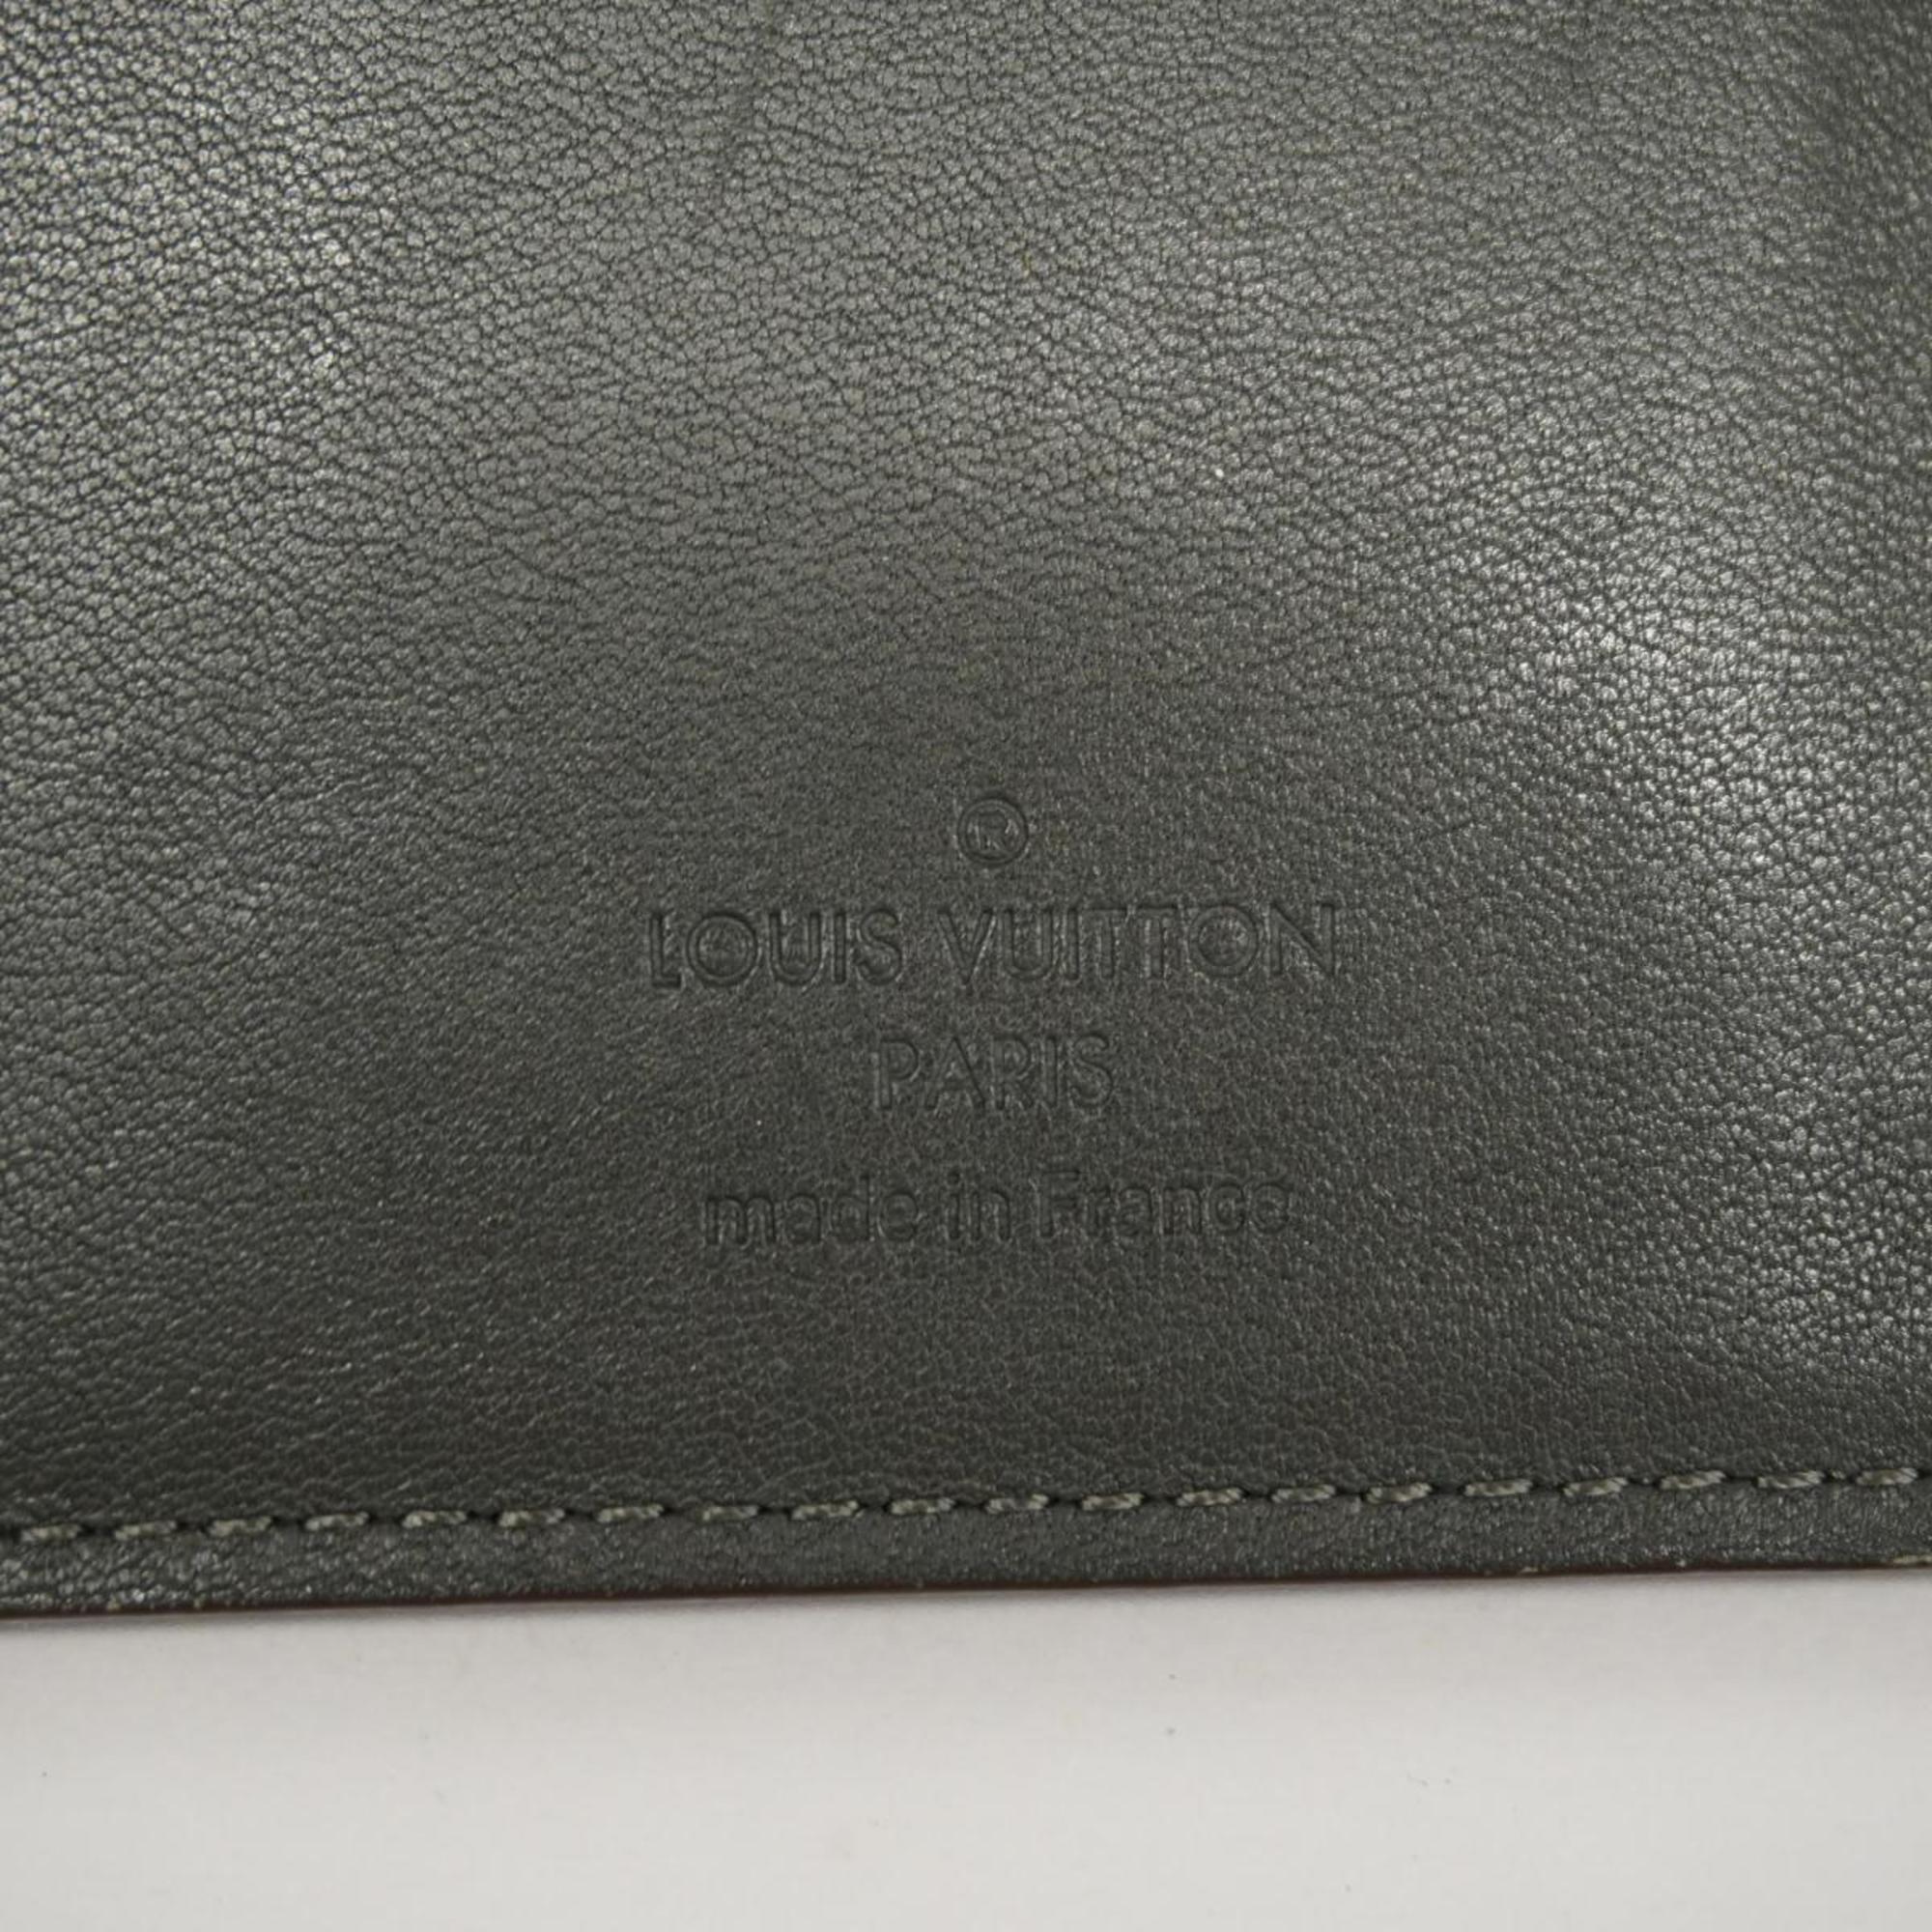 ルイ・ヴィトン(Louis Vuitton) ルイ・ヴィトン 長財布 トリヨン  ポルトフォイユブラザ M58192 ダークグレーメンズ